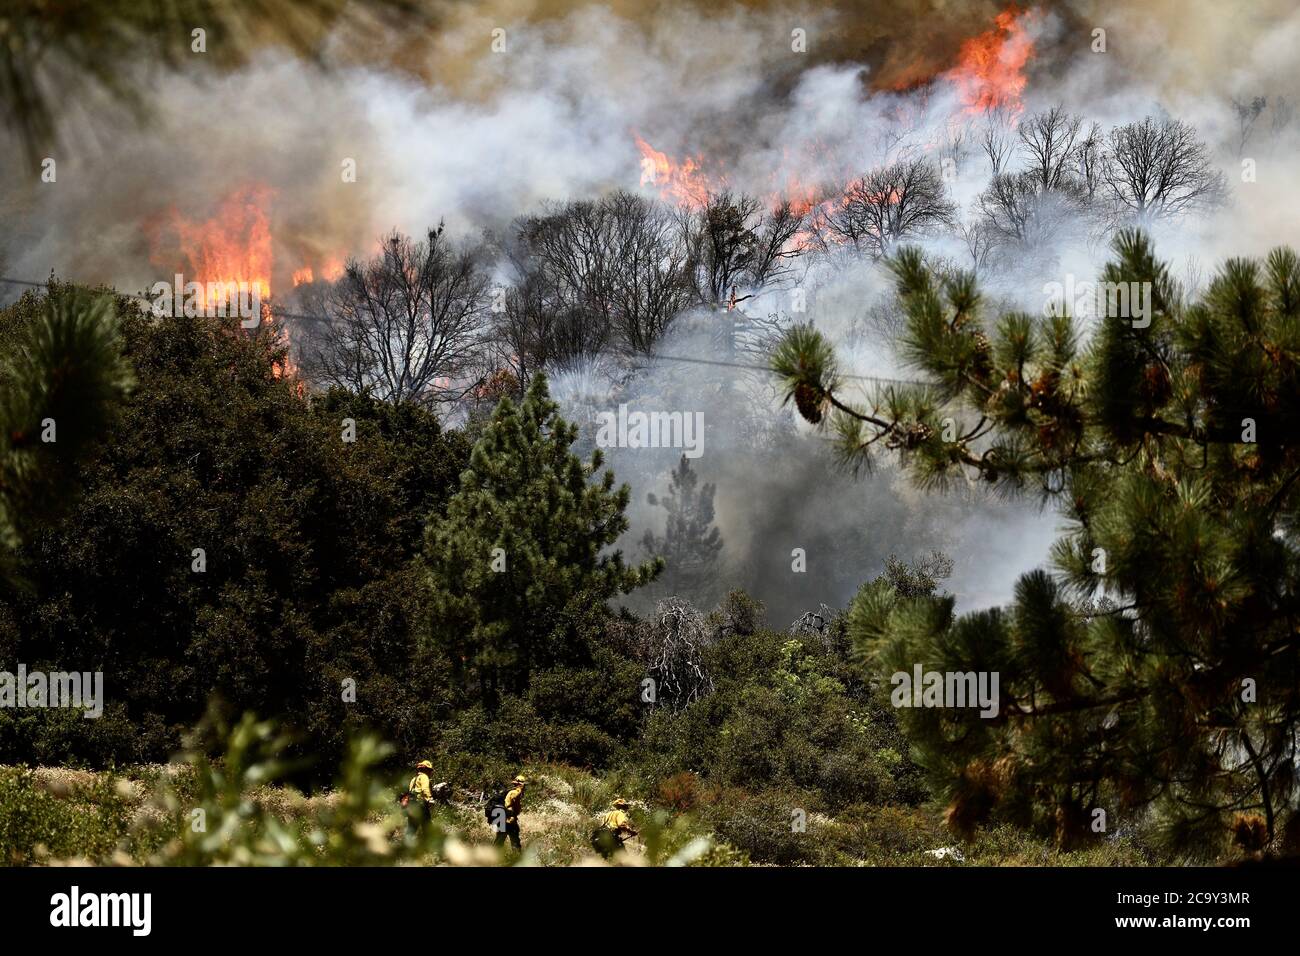 Los Angeles, États-Unis. 2 août 2020. Les pompiers combattent un feu de forêt dans le comté de Riverside, en Californie du Sud, aux États-Unis, le 2 août 2020. Le feu, surnommé « Pomme Fire », a forcé environ 8,000 habitants à être évacués, ont déclaré les autorités. L'incendie a commencé vendredi soir et a brûlée 20,516 acres (83.1 km carrés), selon les dernières informations mises à jour par le Département de la foresterie et de la protection contre les incendies de Californie (Cal Fire). Credit: Xinhua/Alay Live News Banque D'Images